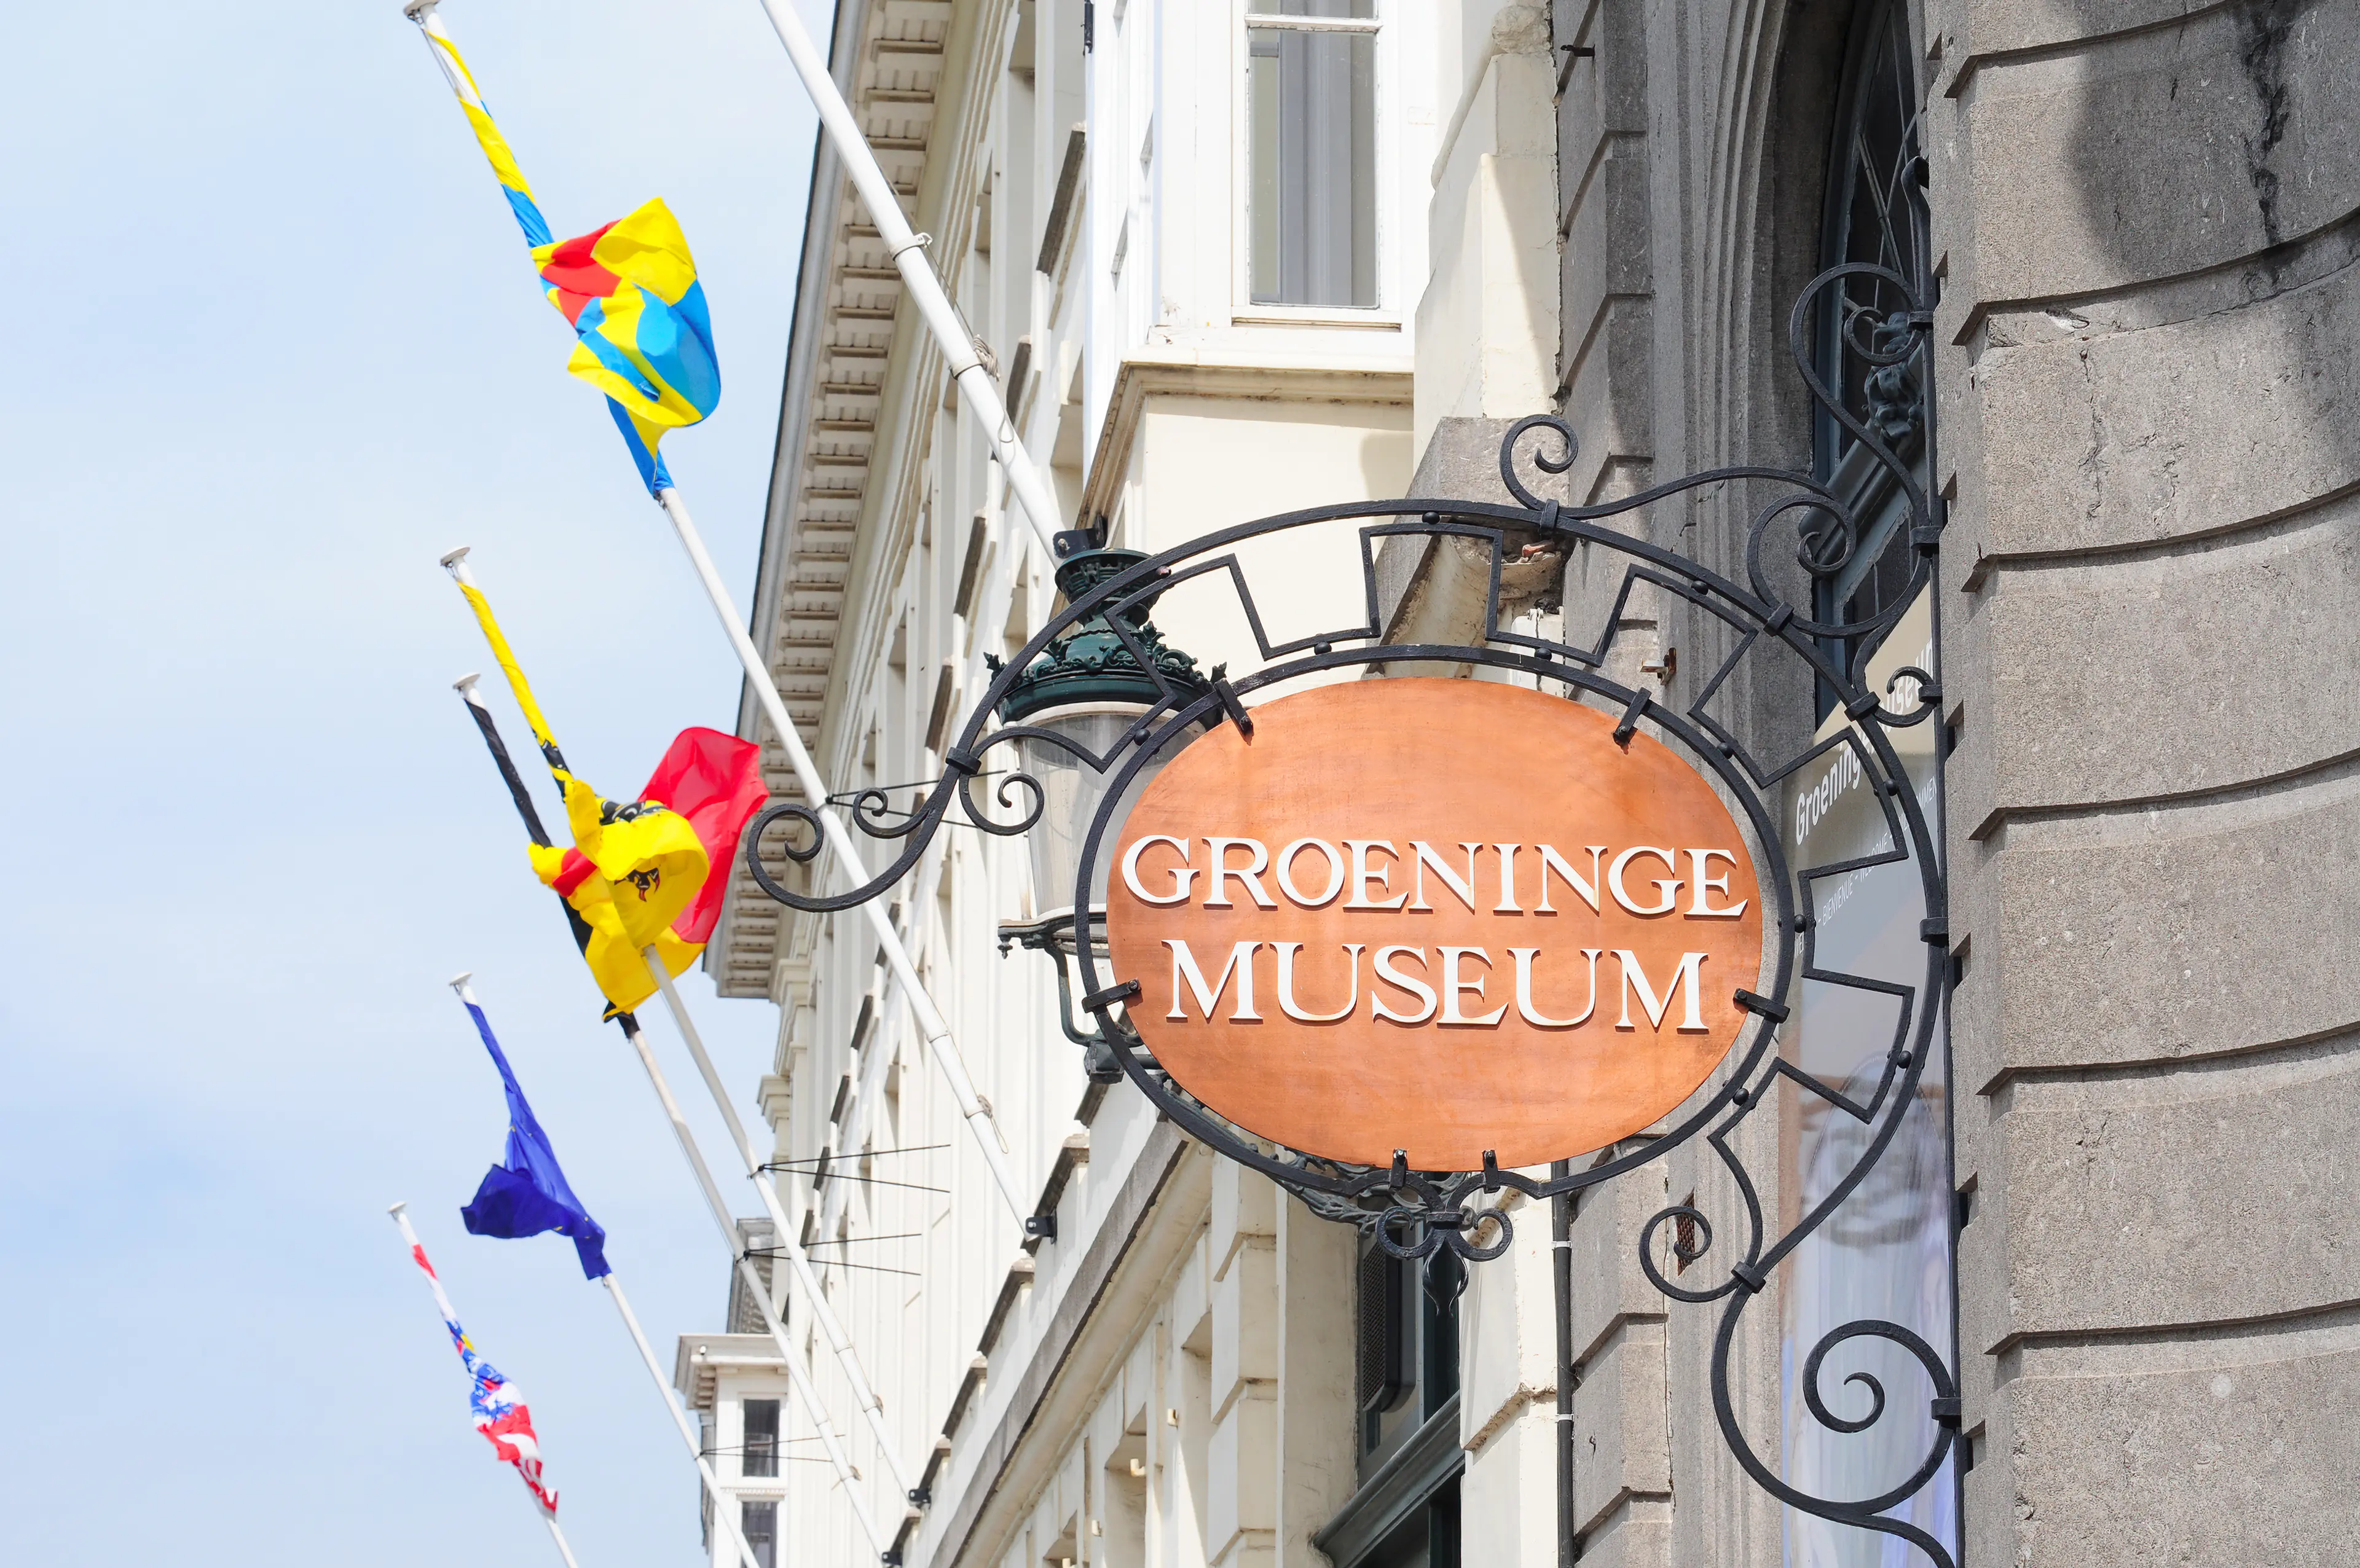 Groeninge Museum